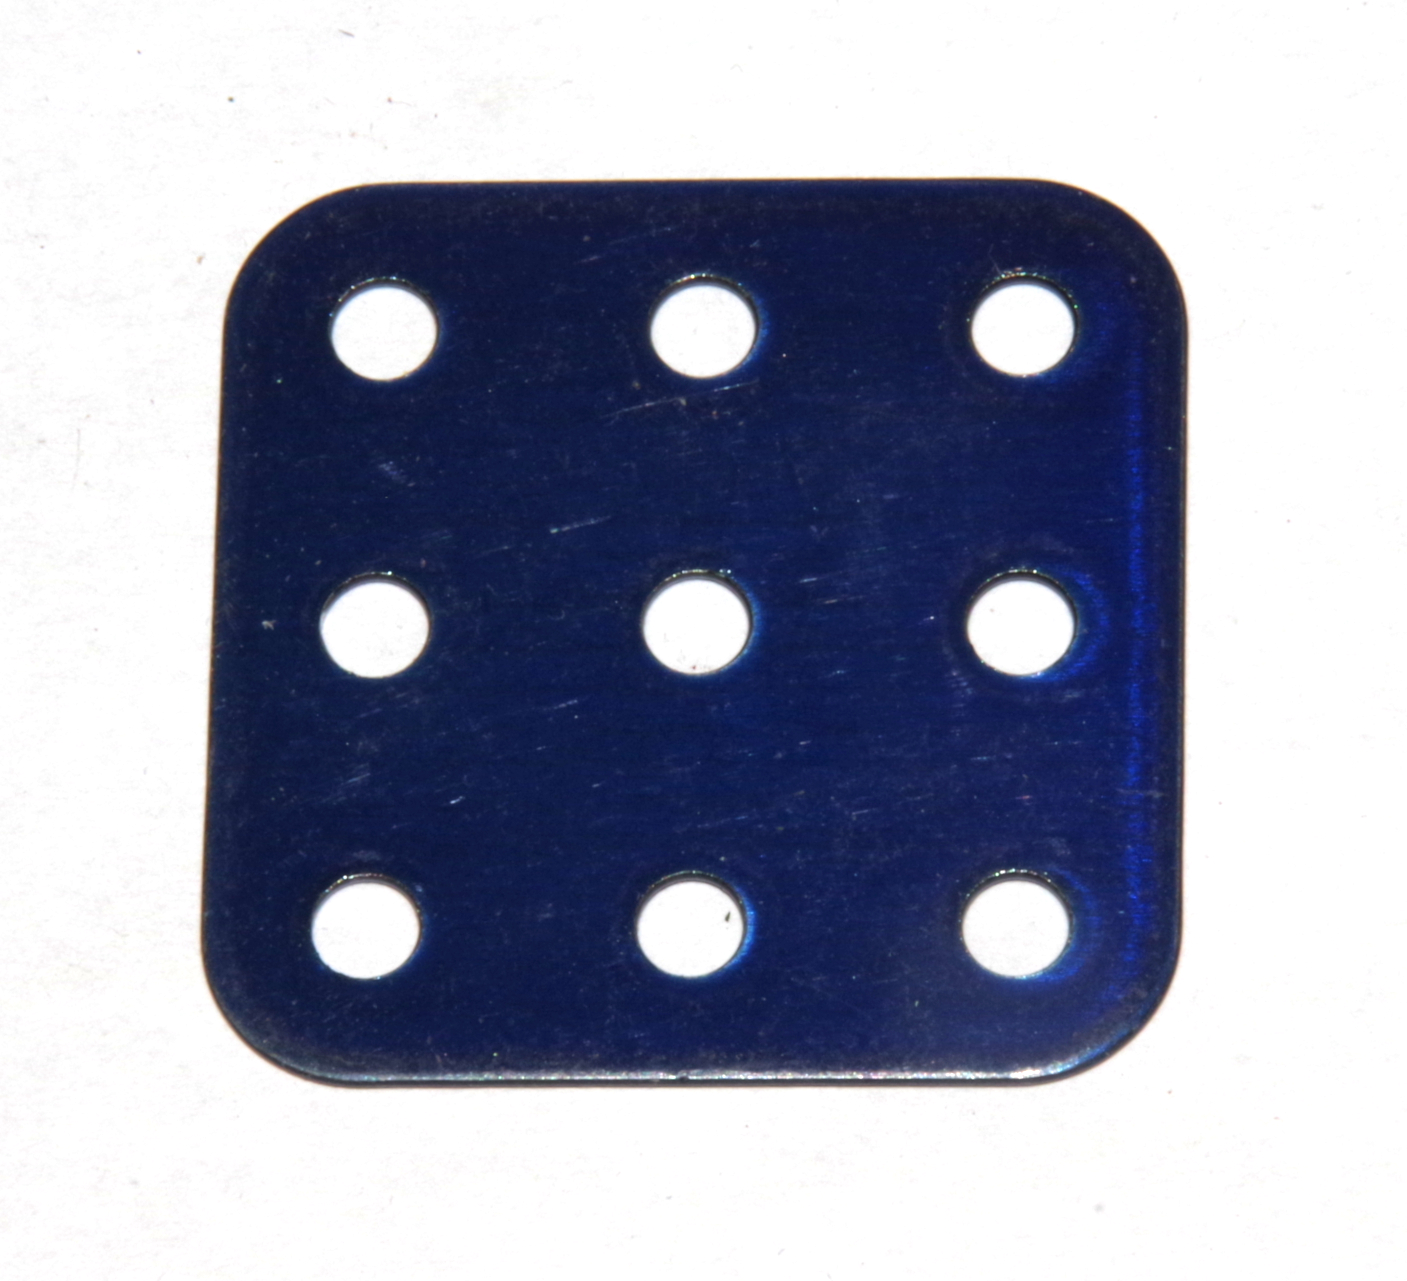 74 Flat Plate 3x3 Iridescent Blue Original